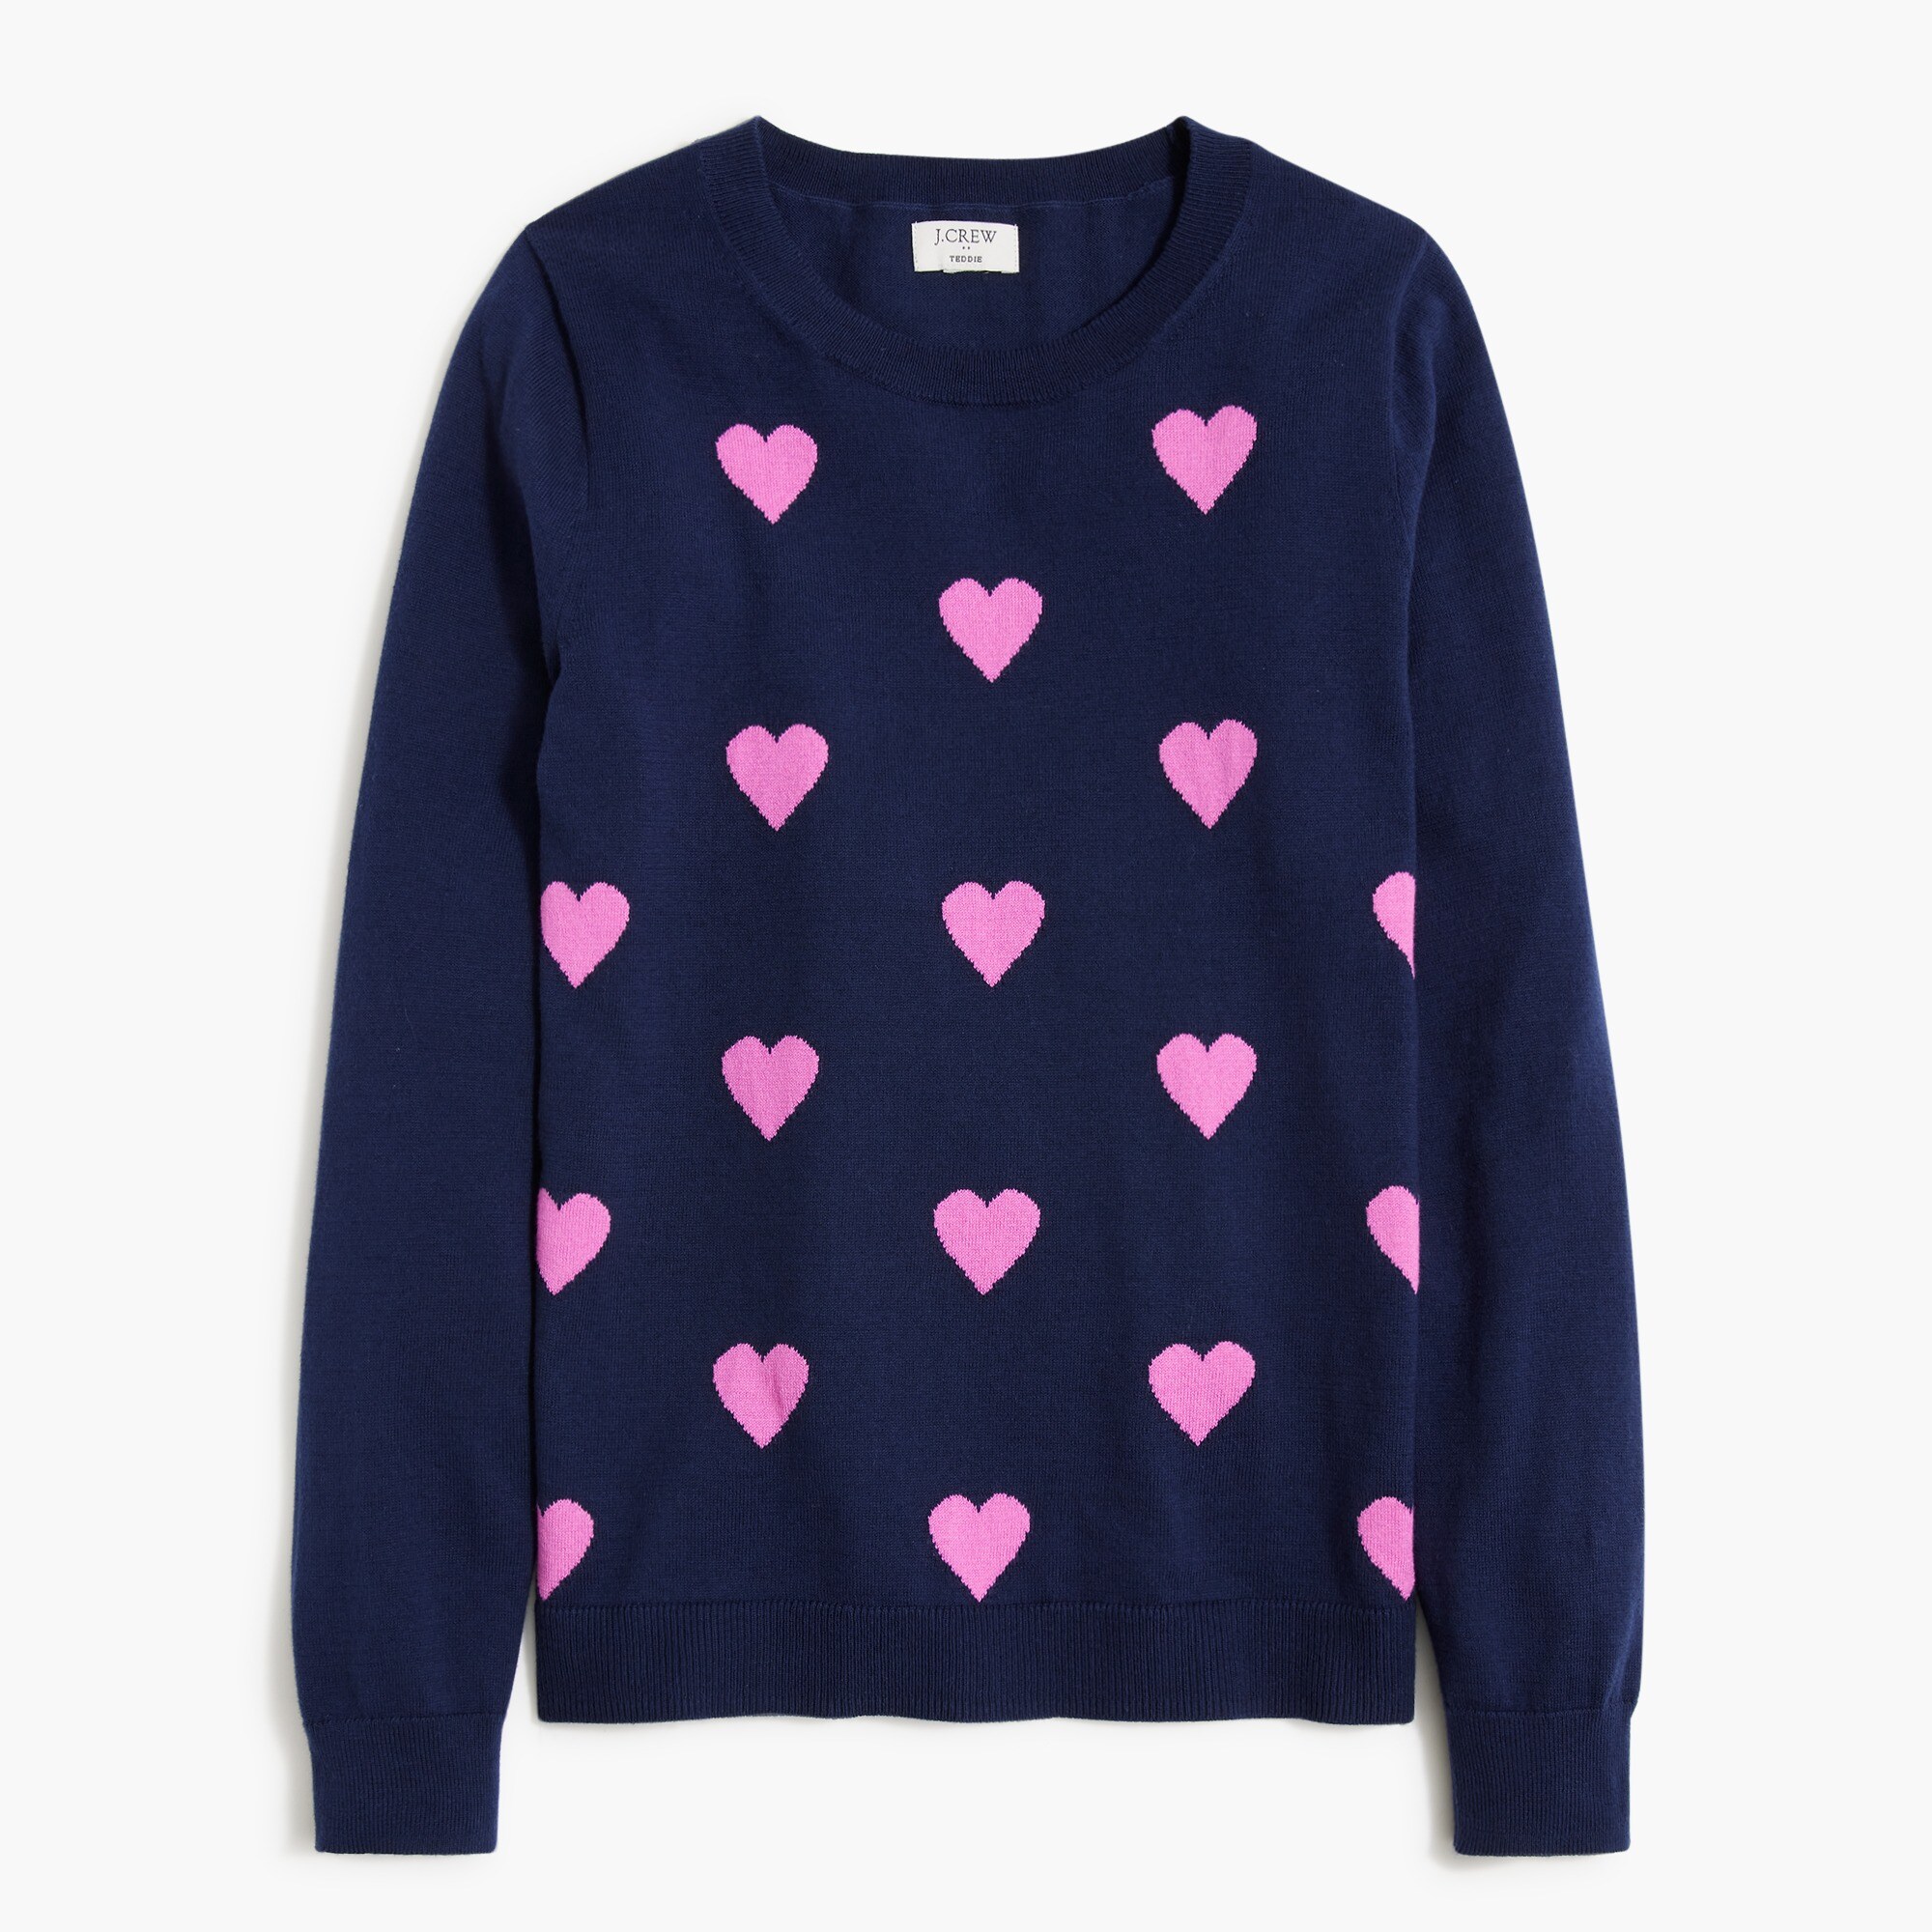  Allover hearts Teddie sweater